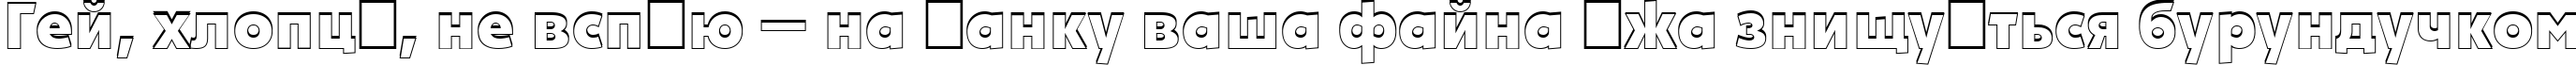 Пример написания шрифтом a_PlakatCmplSh ExtraBold текста на украинском